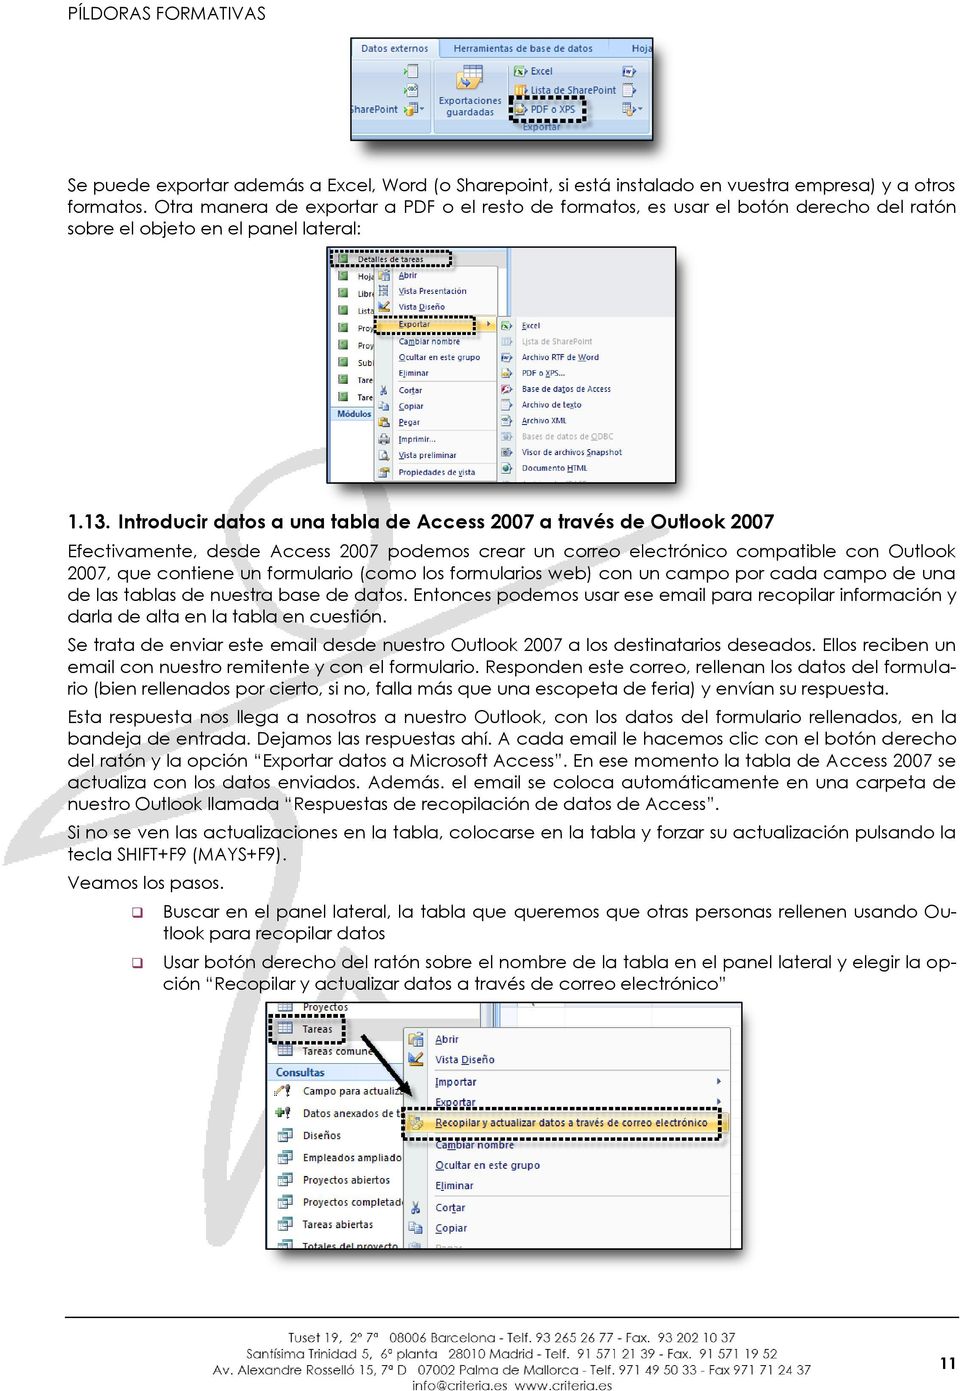 Introducir datos a una tabla de Access 2007 a través de Outlook 2007 Efectivamente, desde Access 2007 podemos crear un correo electrónico compatible con Outlook 2007, que contiene un formulario (como